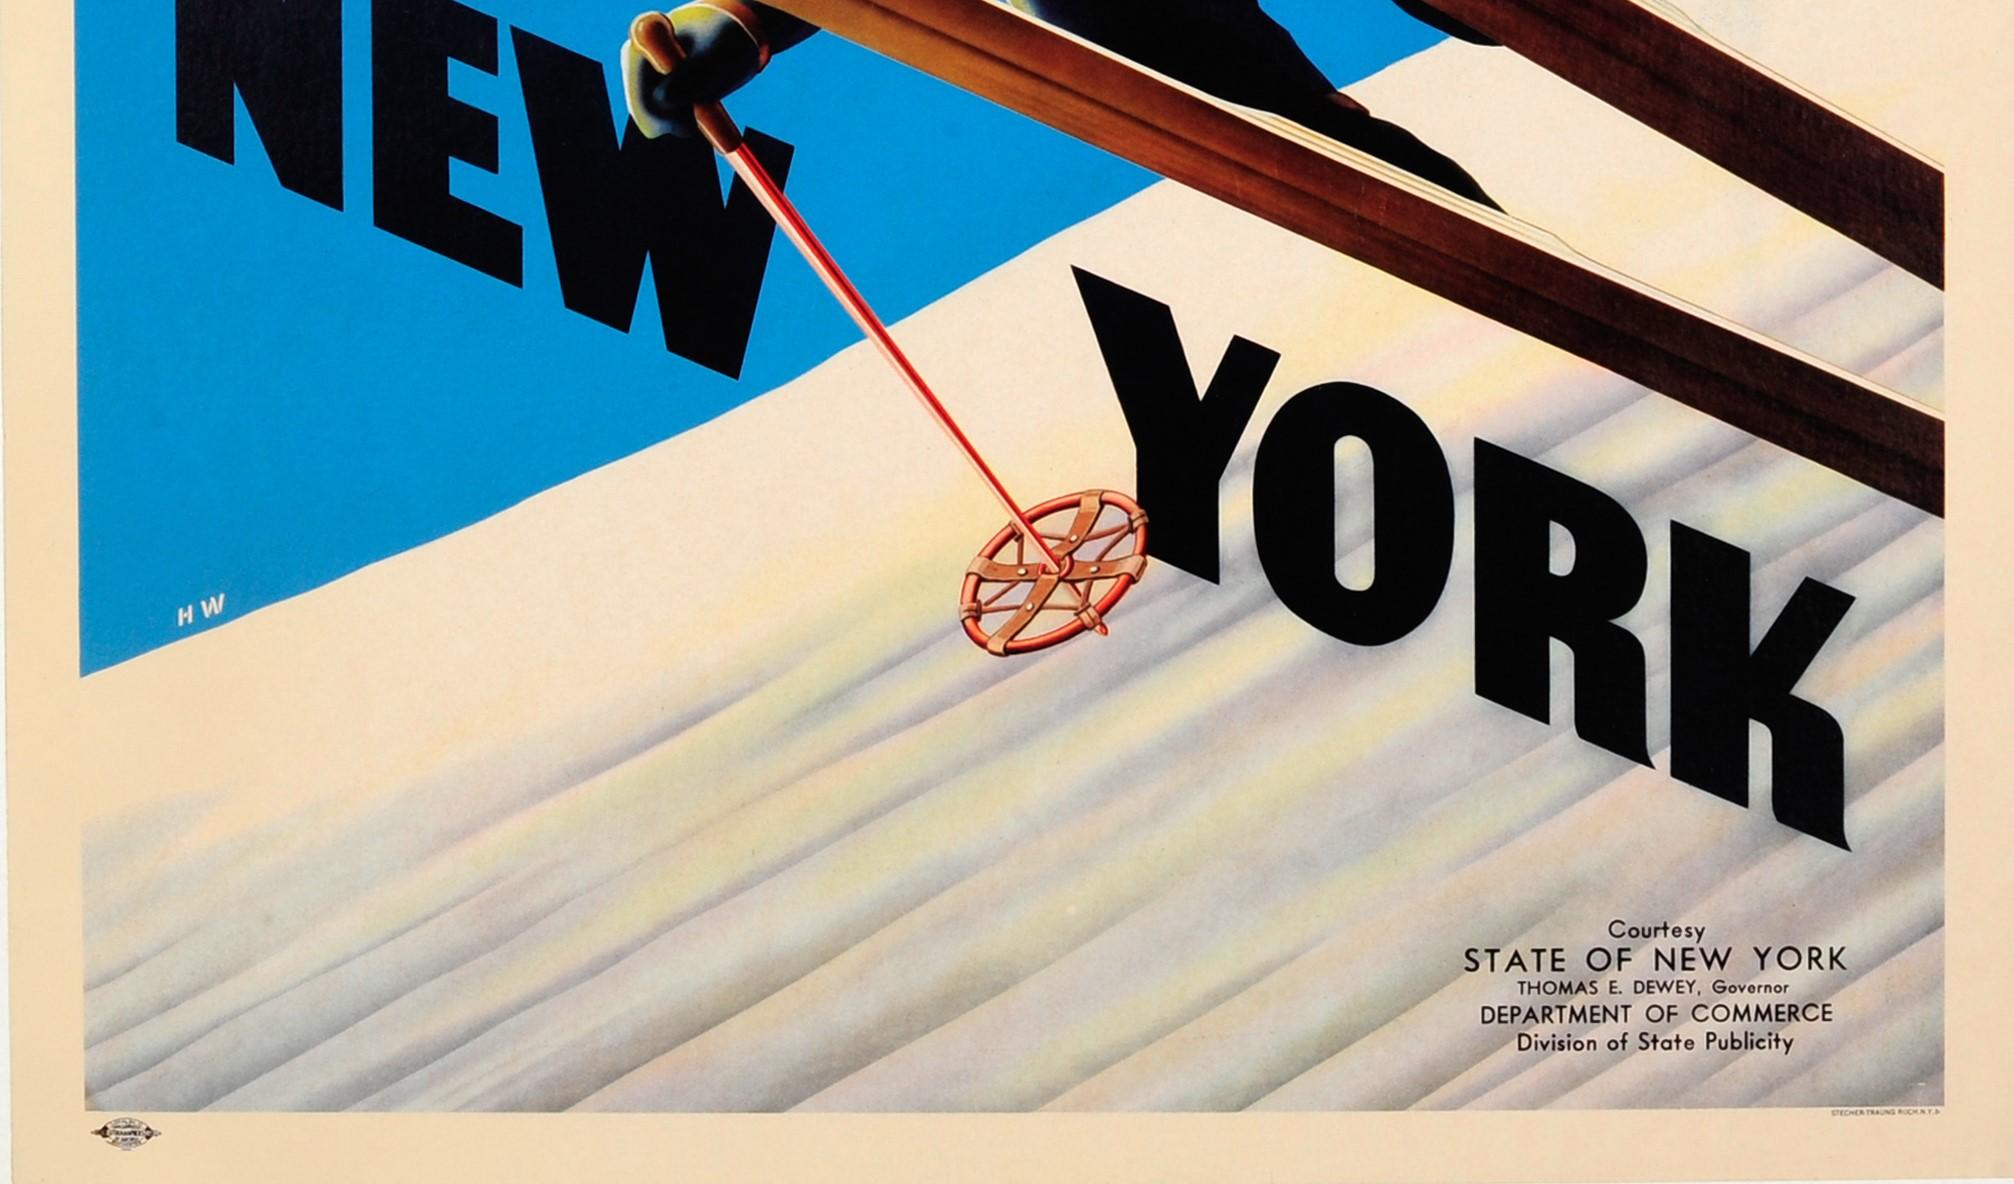 Original Vintage-Skiplakat, Ski, New York, Ft. Skier mit freundlicher Genehmigung des Bundesstaates New York (Blau), Print, von H.W.